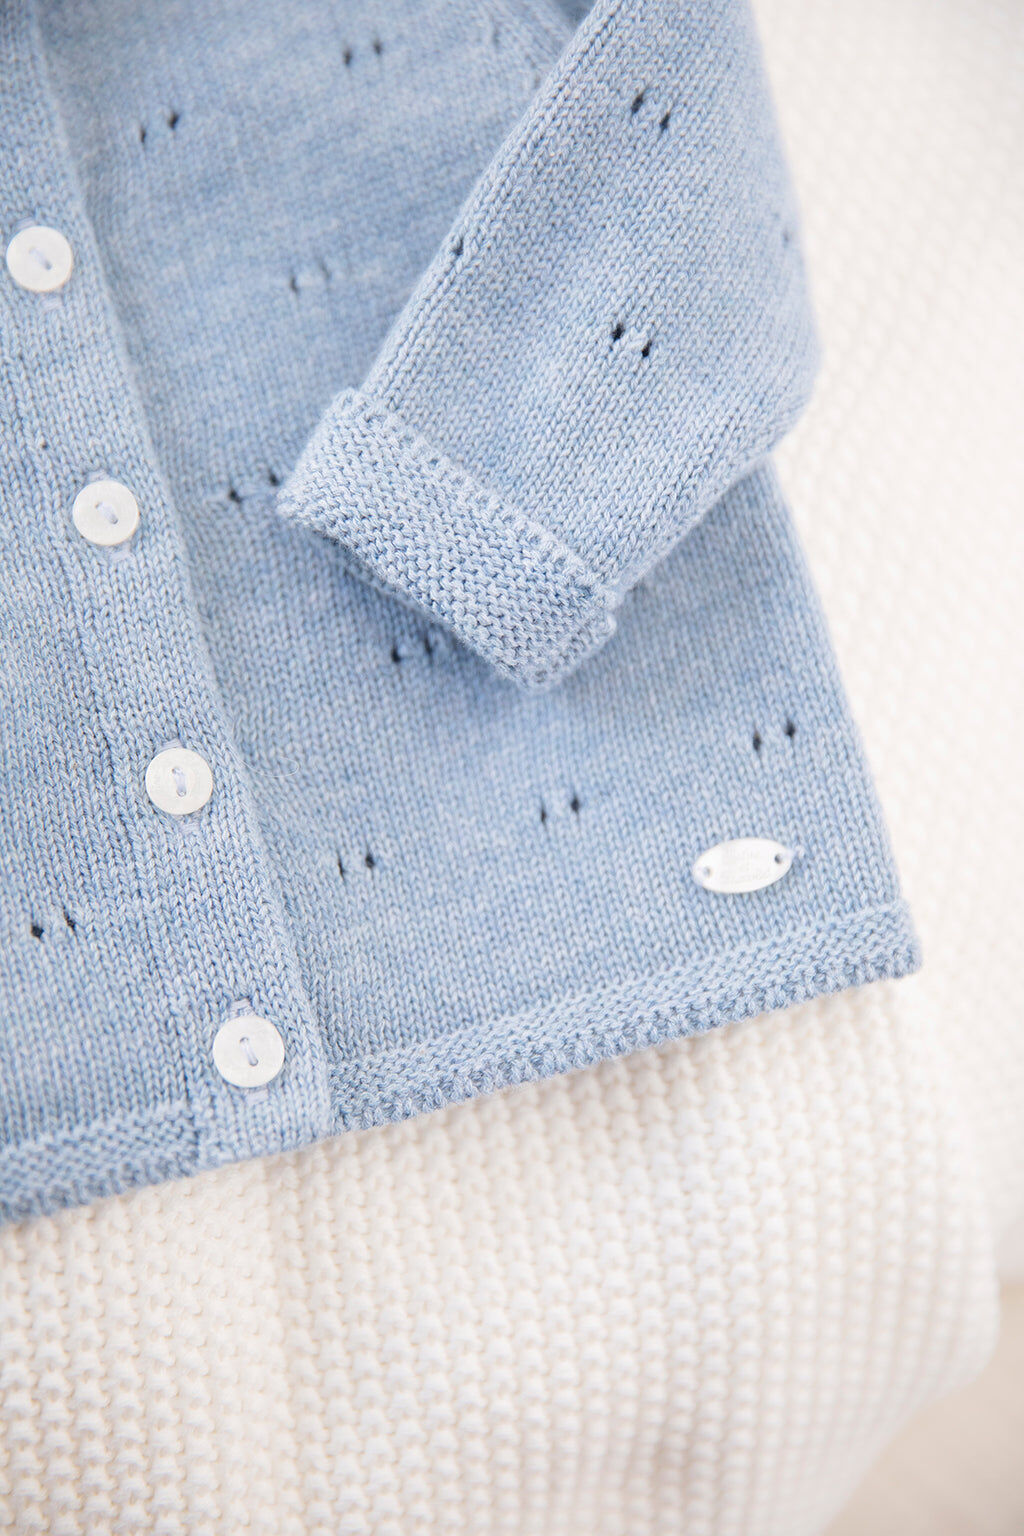 Cardigan - Blue cloud Knitwear openwork